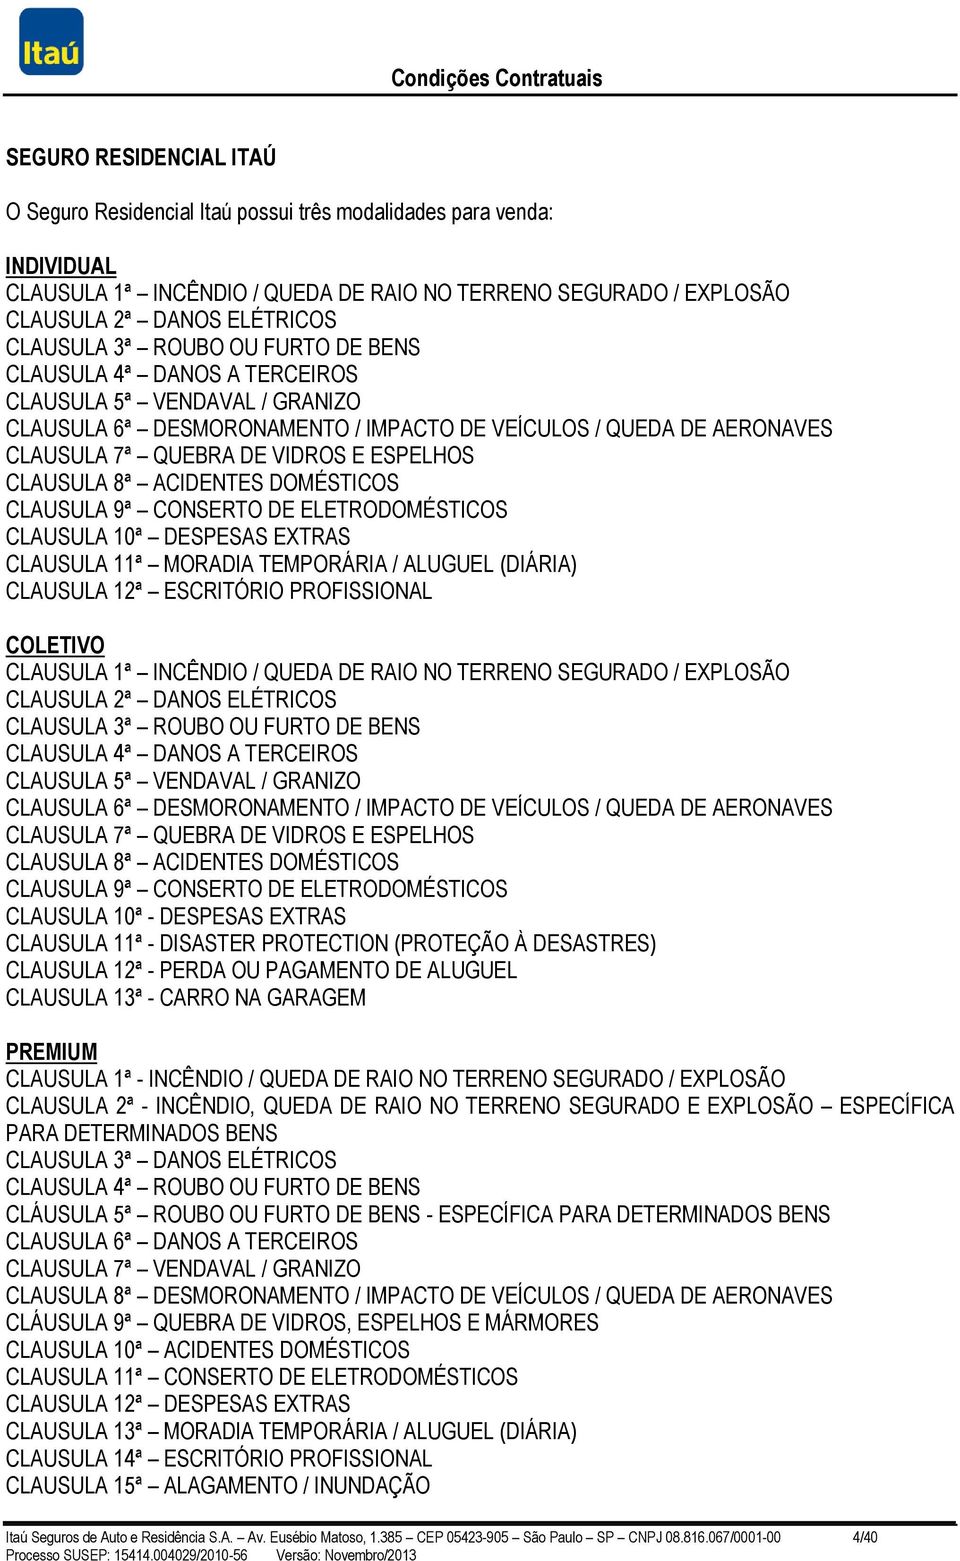 ESPELHOS CLAUSULA 8ª ACIDENTES DOMÉSTICOS CLAUSULA 9ª CONSERTO DE ELETRODOMÉSTICOS CLAUSULA 10ª DESPESAS EXTRAS CLAUSULA 11ª MORADIA TEMPORÁRIA / ALUGUEL (DIÁRIA) CLAUSULA 12ª ESCRITÓRIO PROFISSIONAL